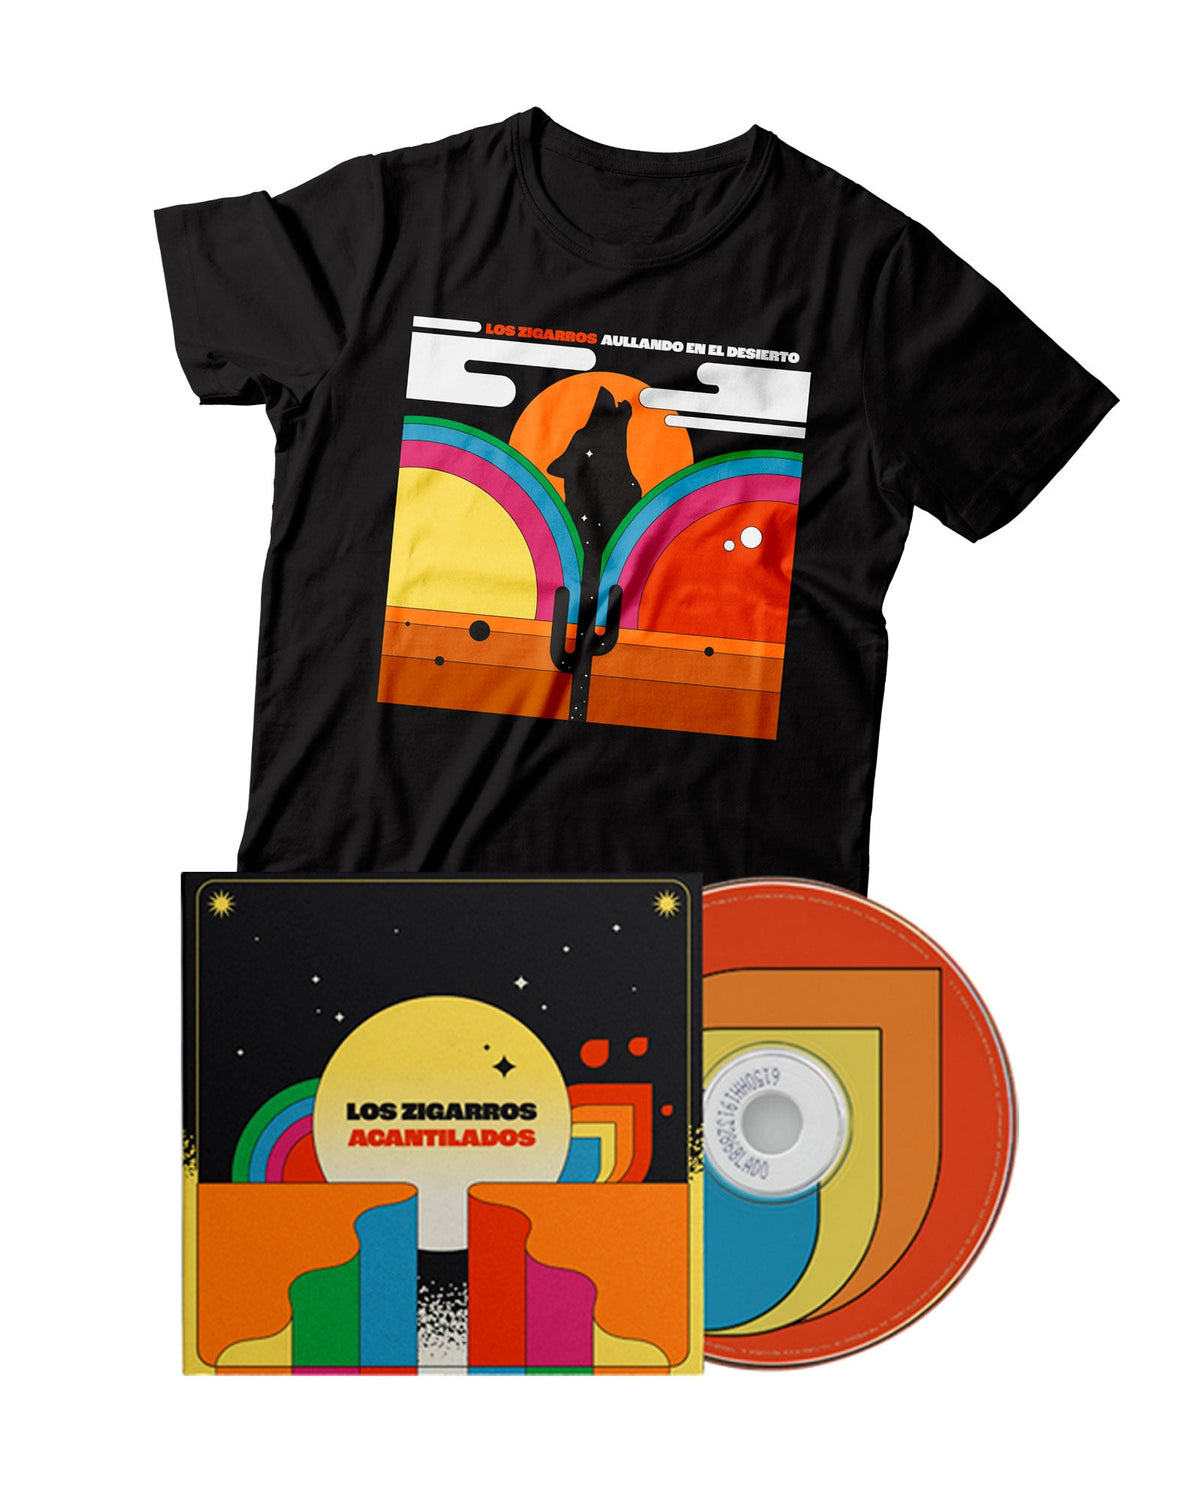 Los Zigarros - CD Digipack "Acantilados" + Camiseta "Aullando en el desierto" - D2fy · Rocktud - Los Zigarros